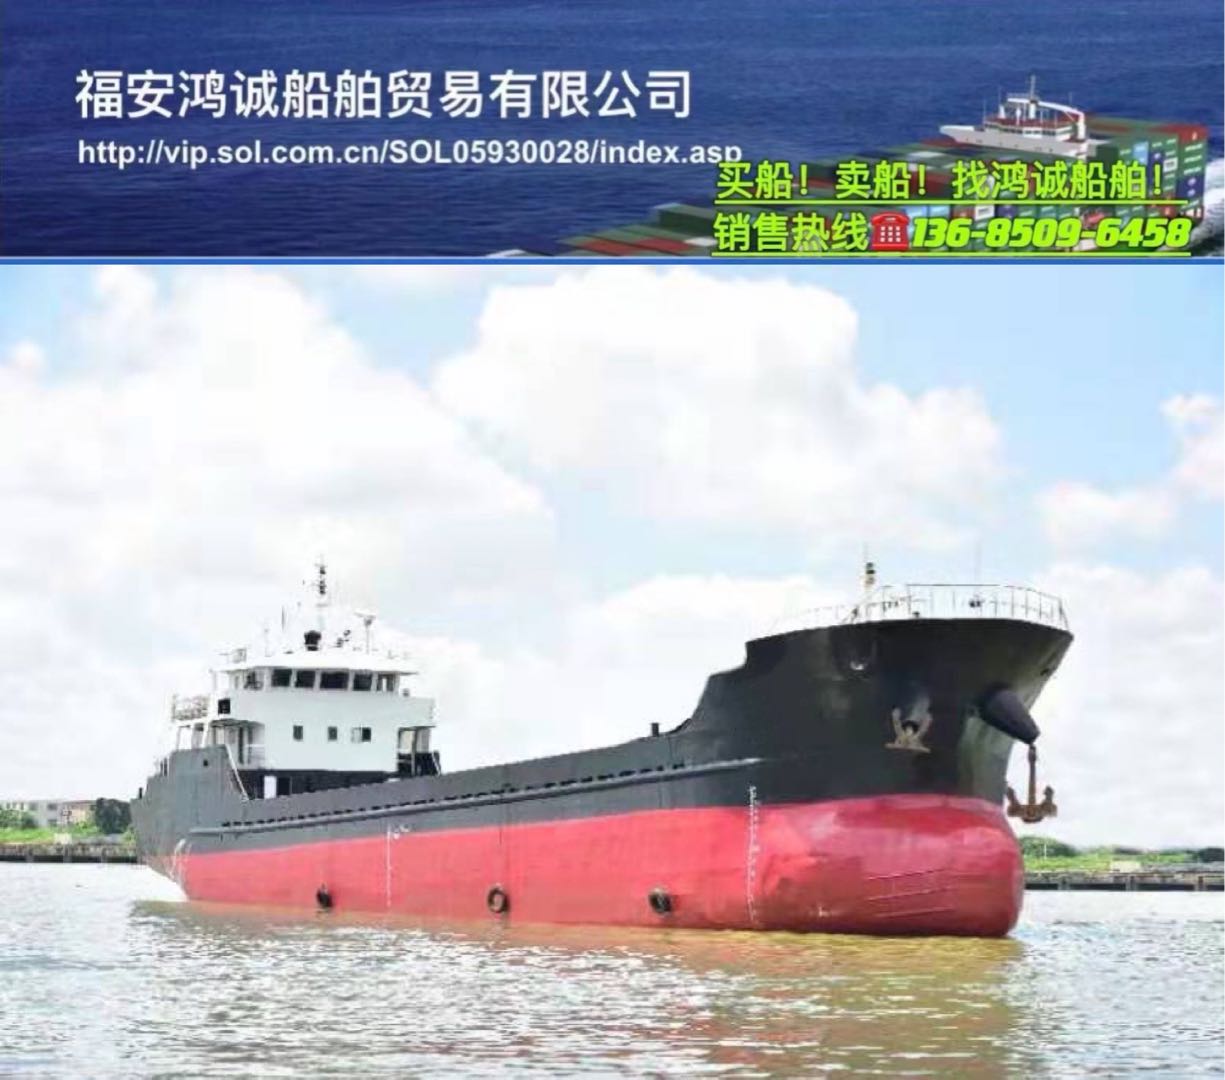 出售实载1350吨干货船： 通舱结构/2011年造